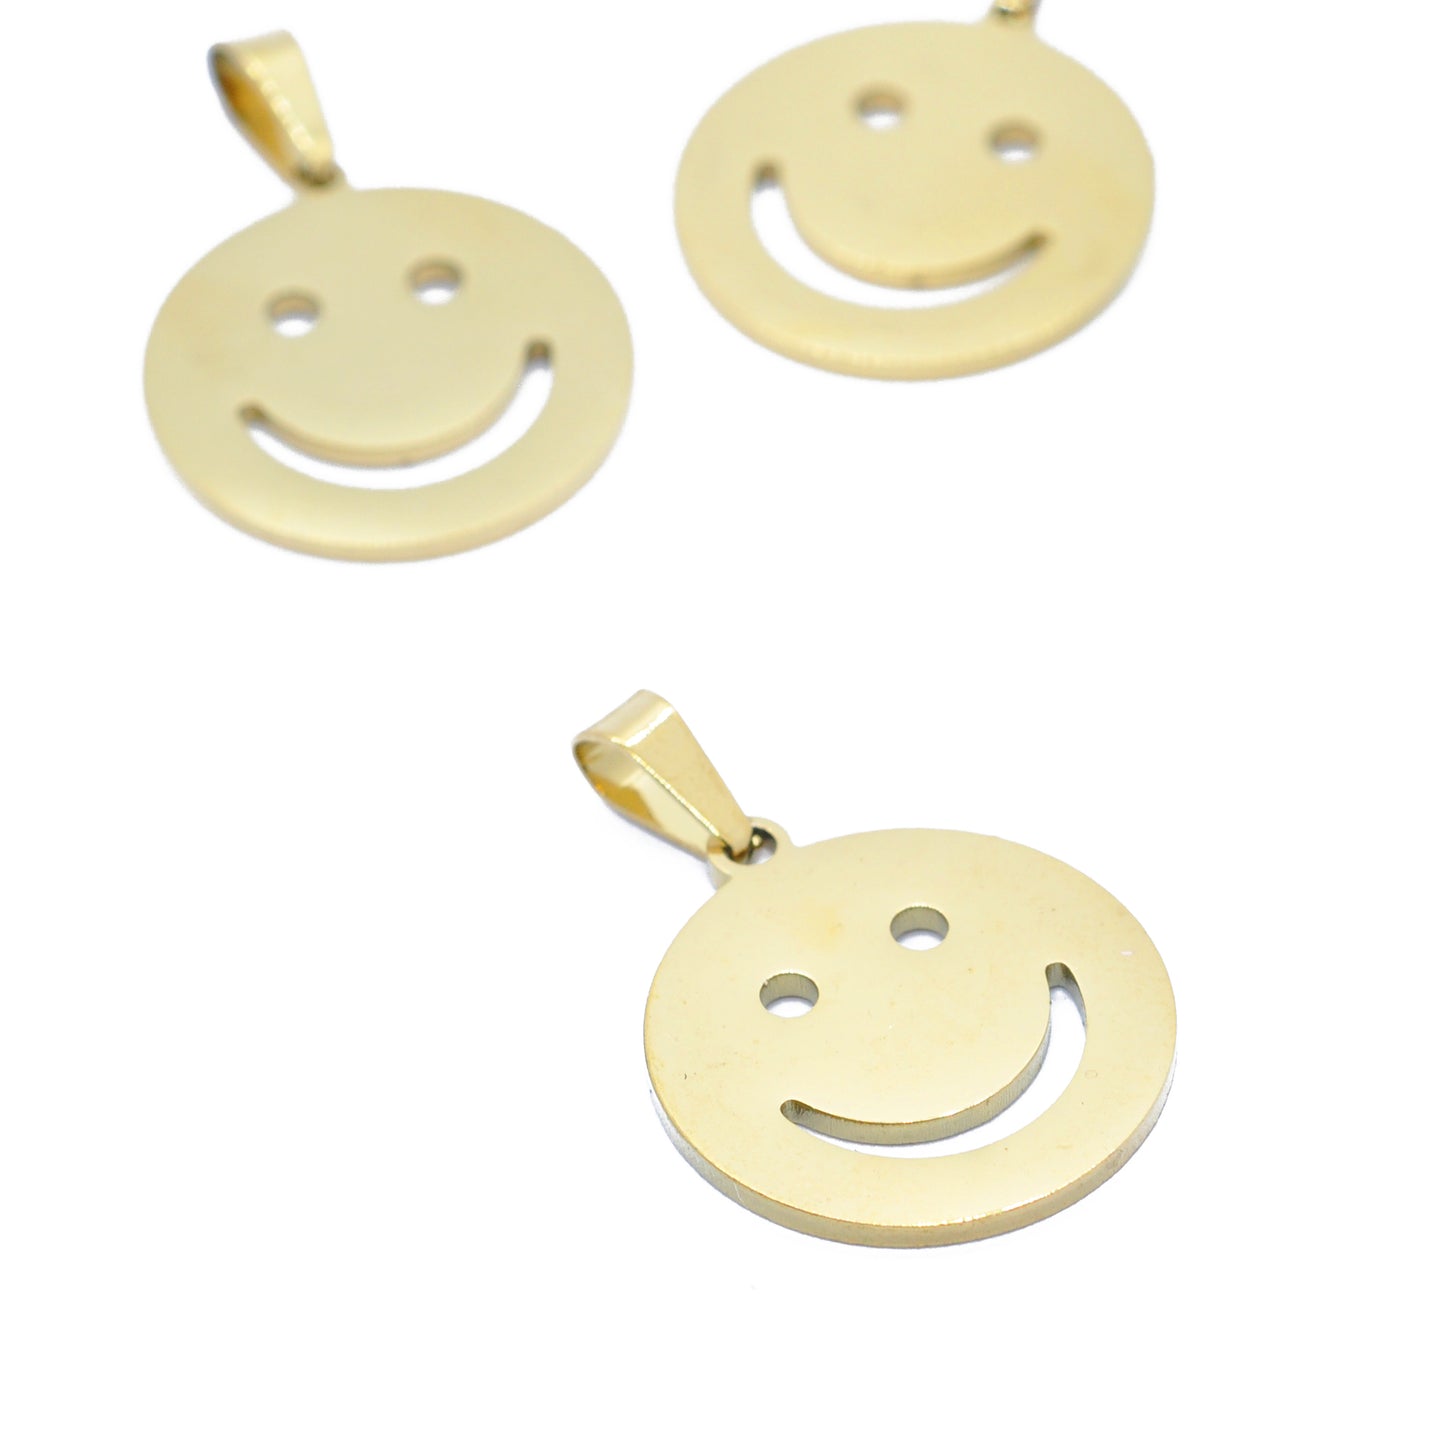 Edelstahl Anhänger Smiley / vergoldet / 20 mm